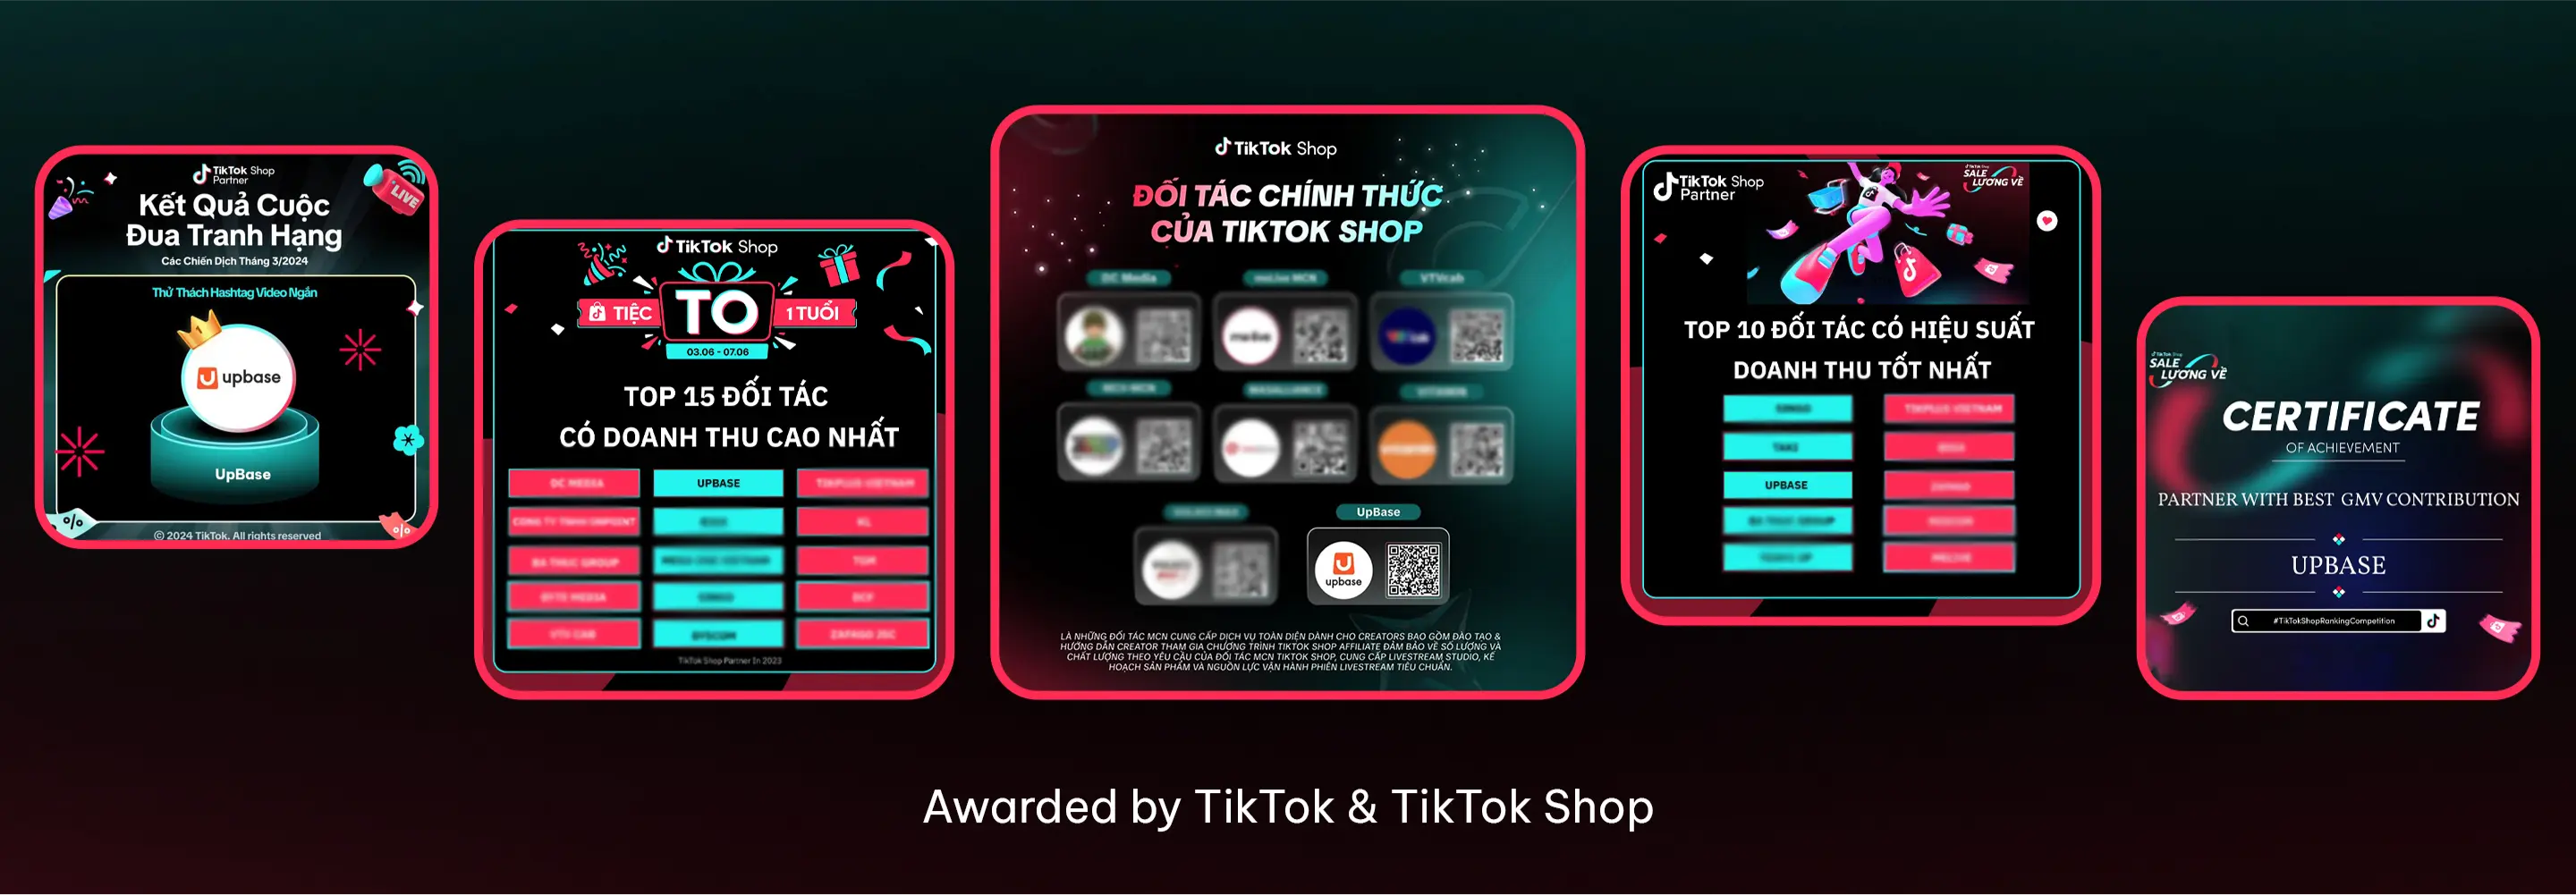 Đối tác chính thức của TikTok Shop